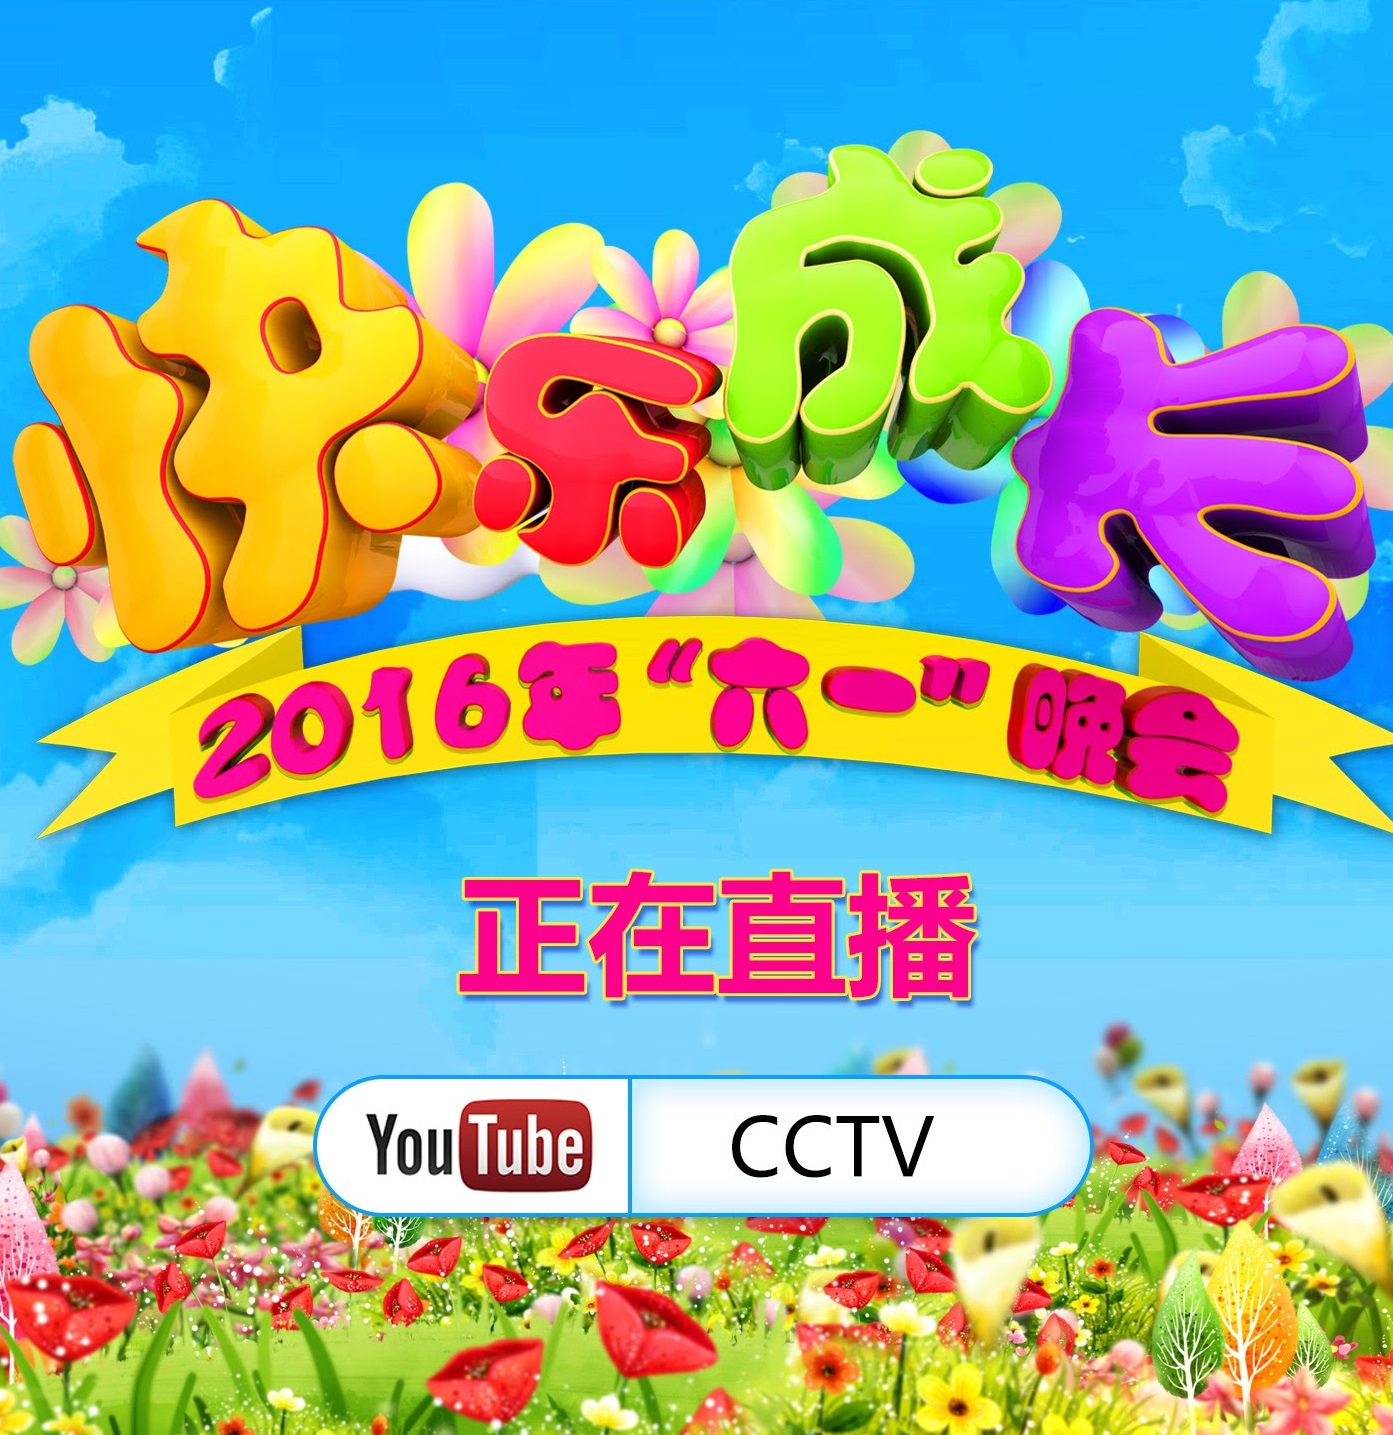 2016央视“六一”晚会《快乐成长》 | CCTV